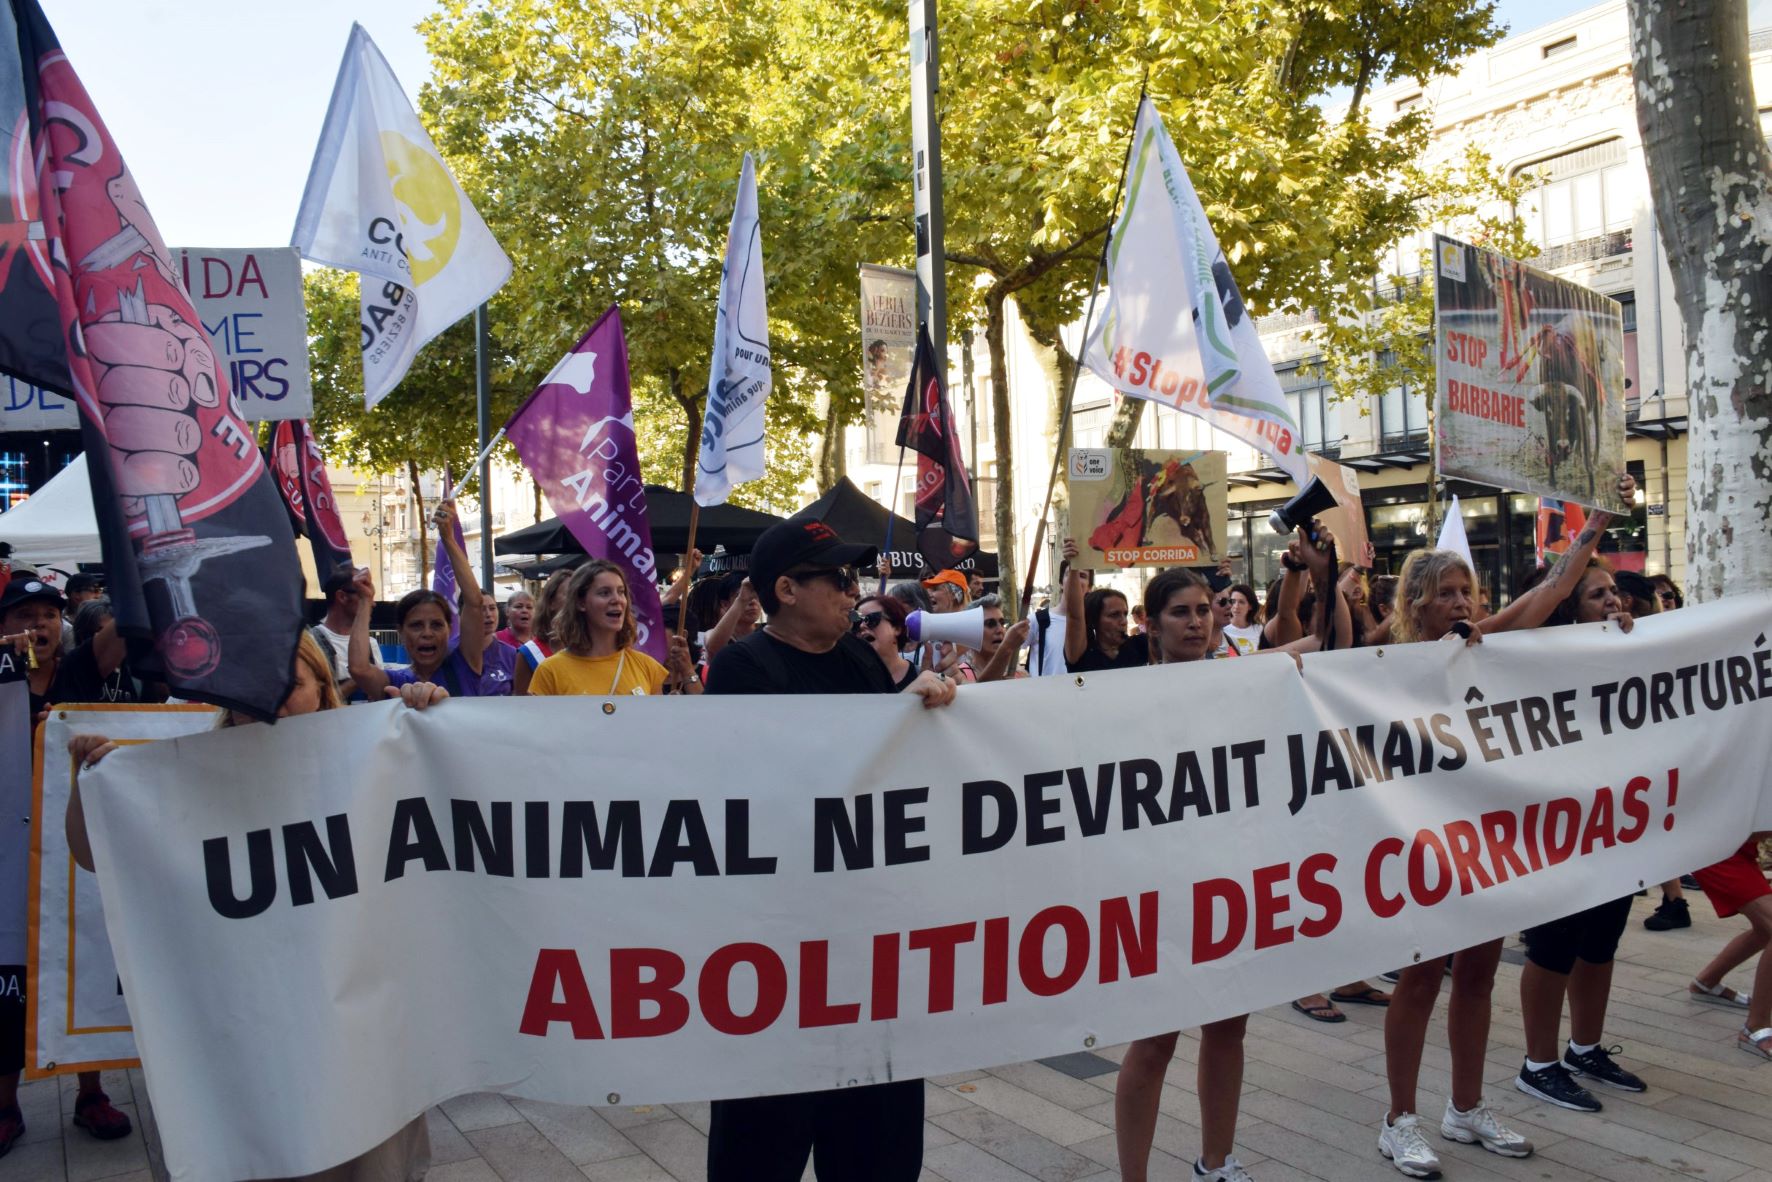 Béziers - Manifestation pour l'abolition des corridas pendant la feria de Béziers